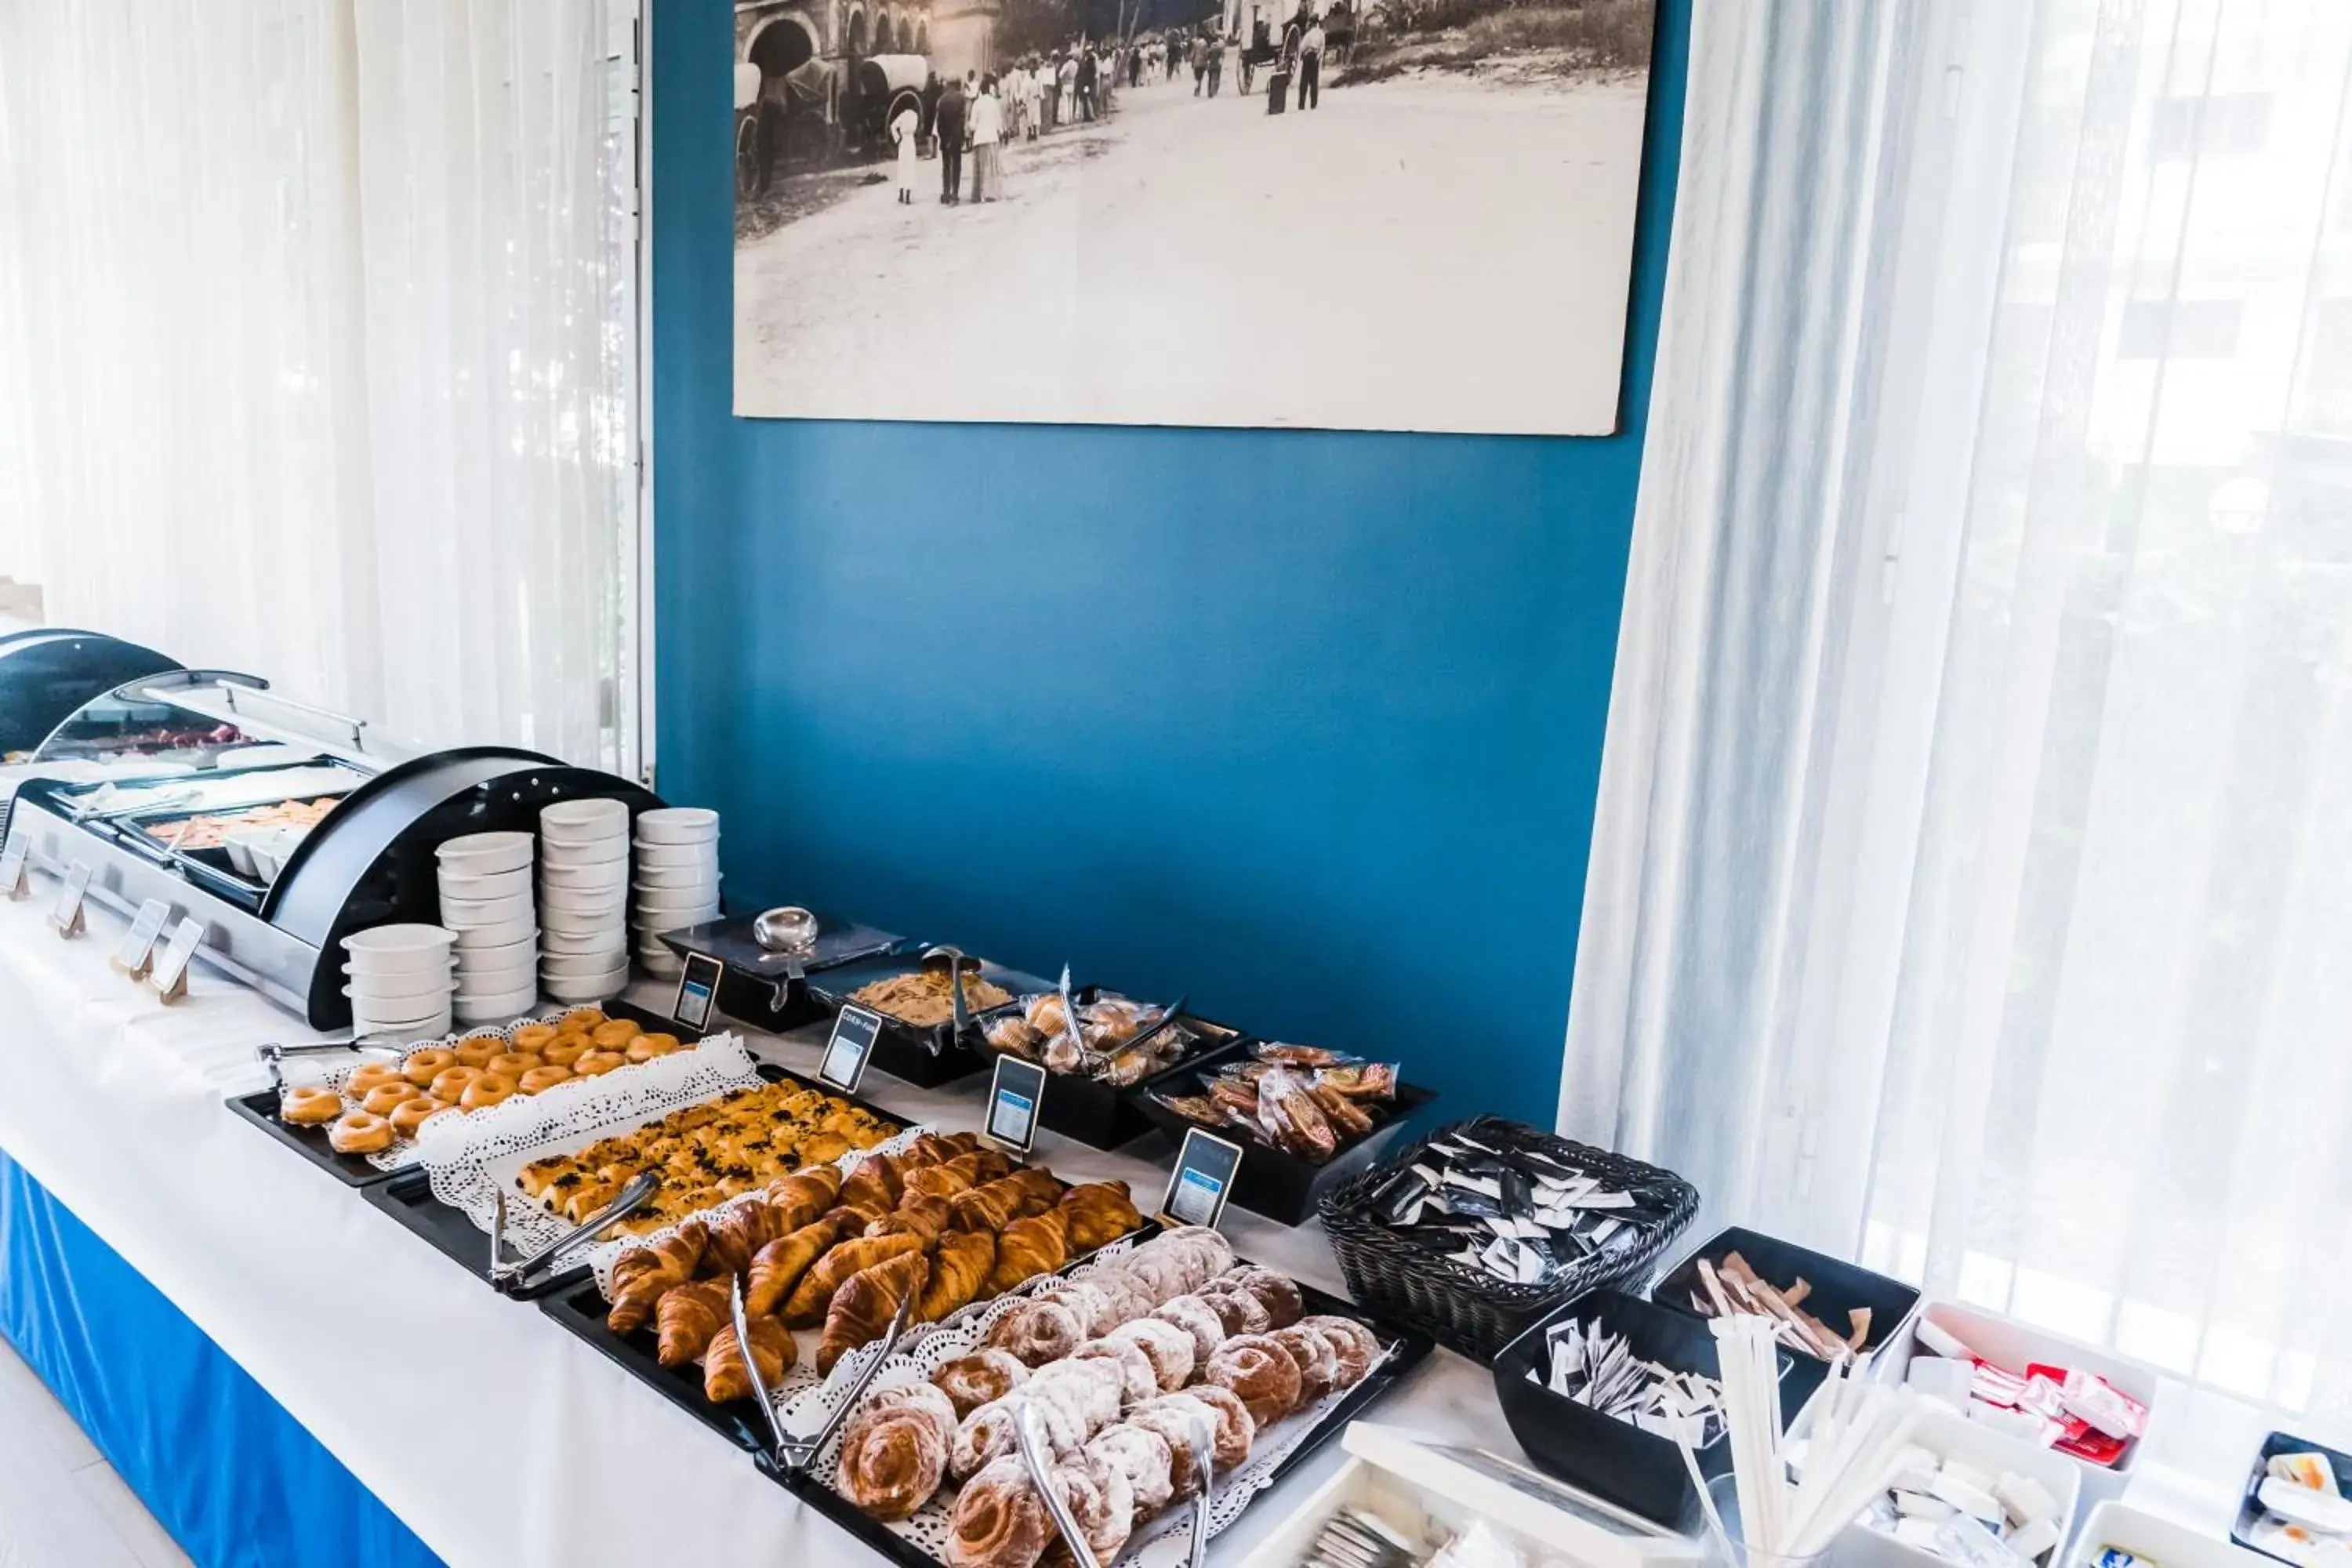 Buffet breakfast in Hotel Planas